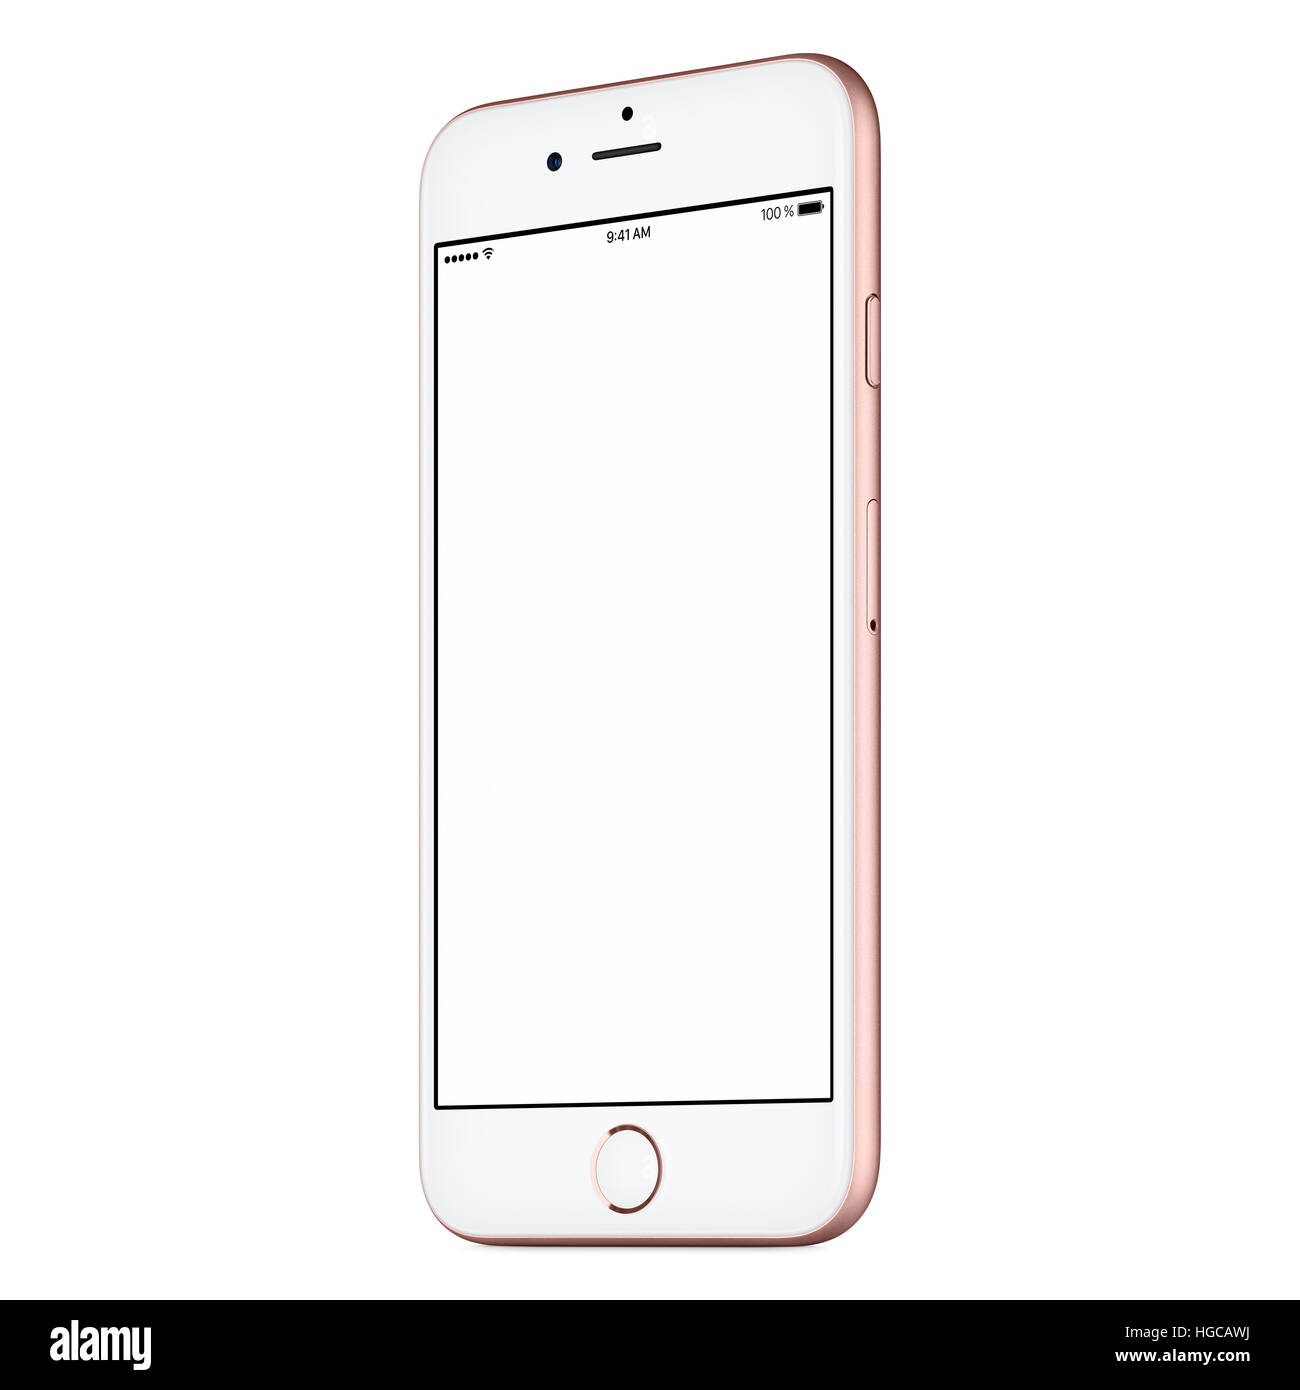 Rosa mobile Smartphone mock-up leicht im Uhrzeigersinn gedreht, mit leeren Bildschirm isoliert auf weißem Hintergrund. Verwenden Sie dieses Smartphone-Modell für portfolio Stockfoto